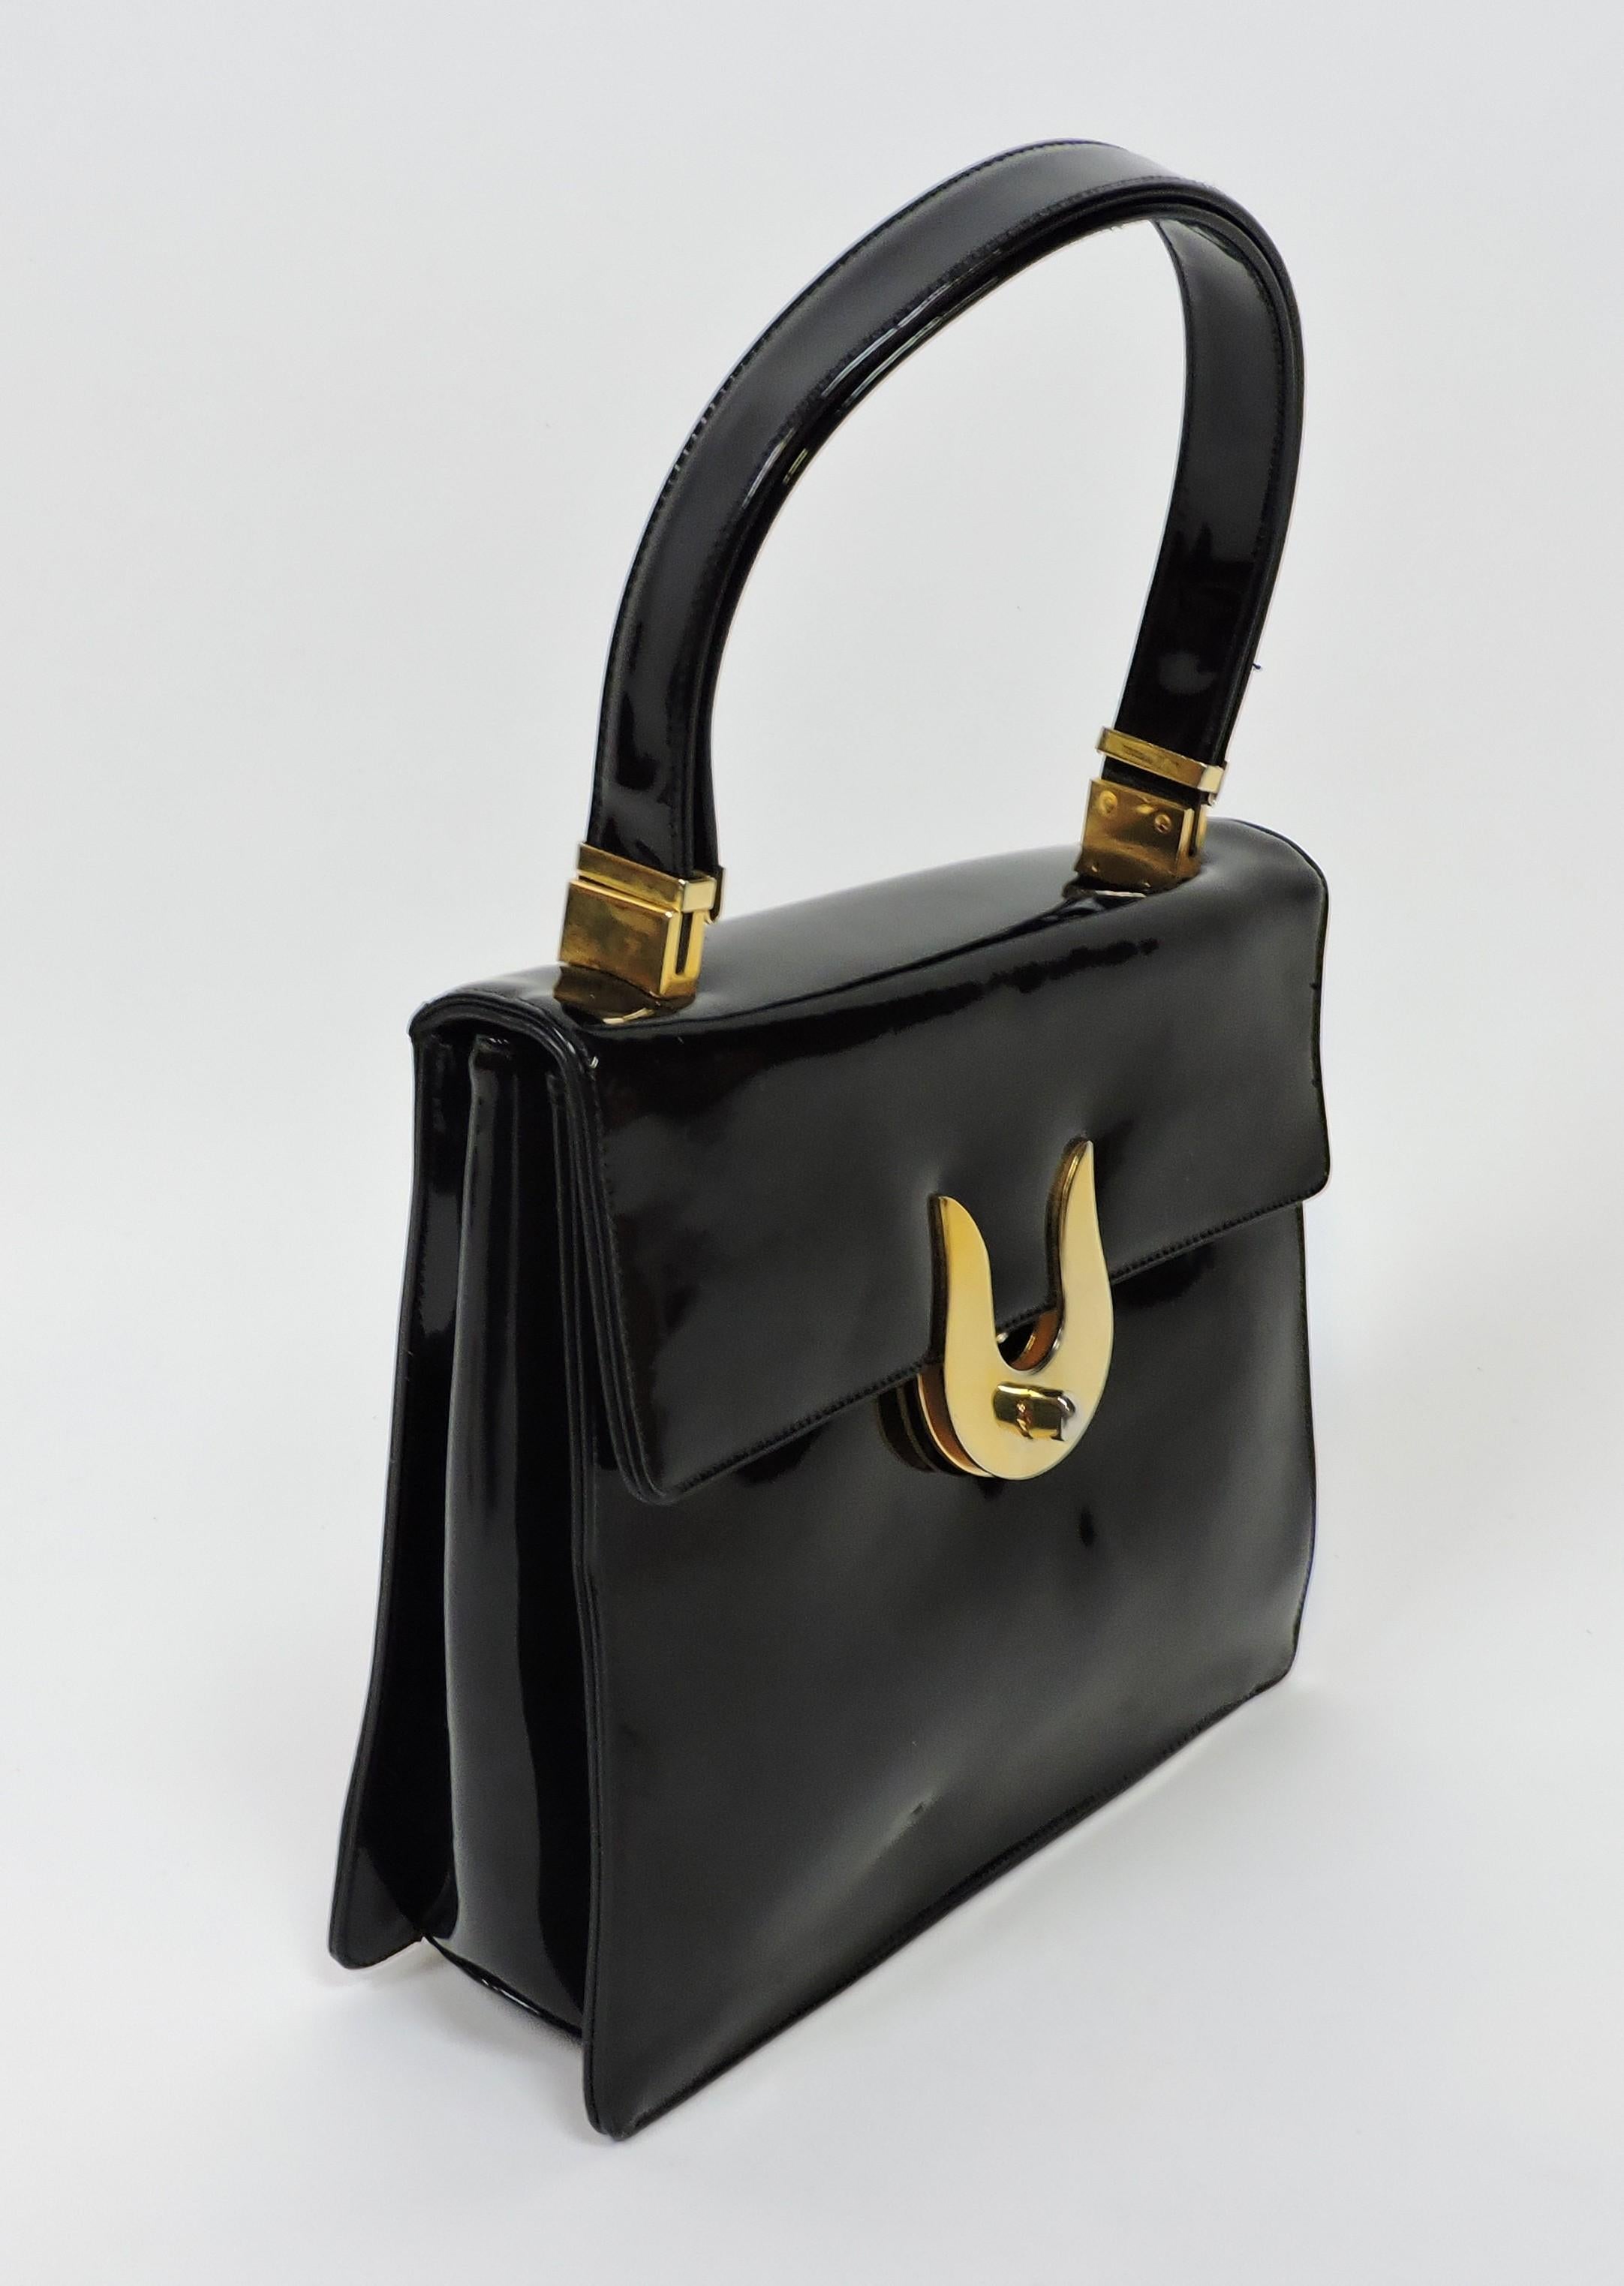 Koret Mid-Century Modern Black Patent Leather and Brass Handbag or Shoulder Bag For Sale 1